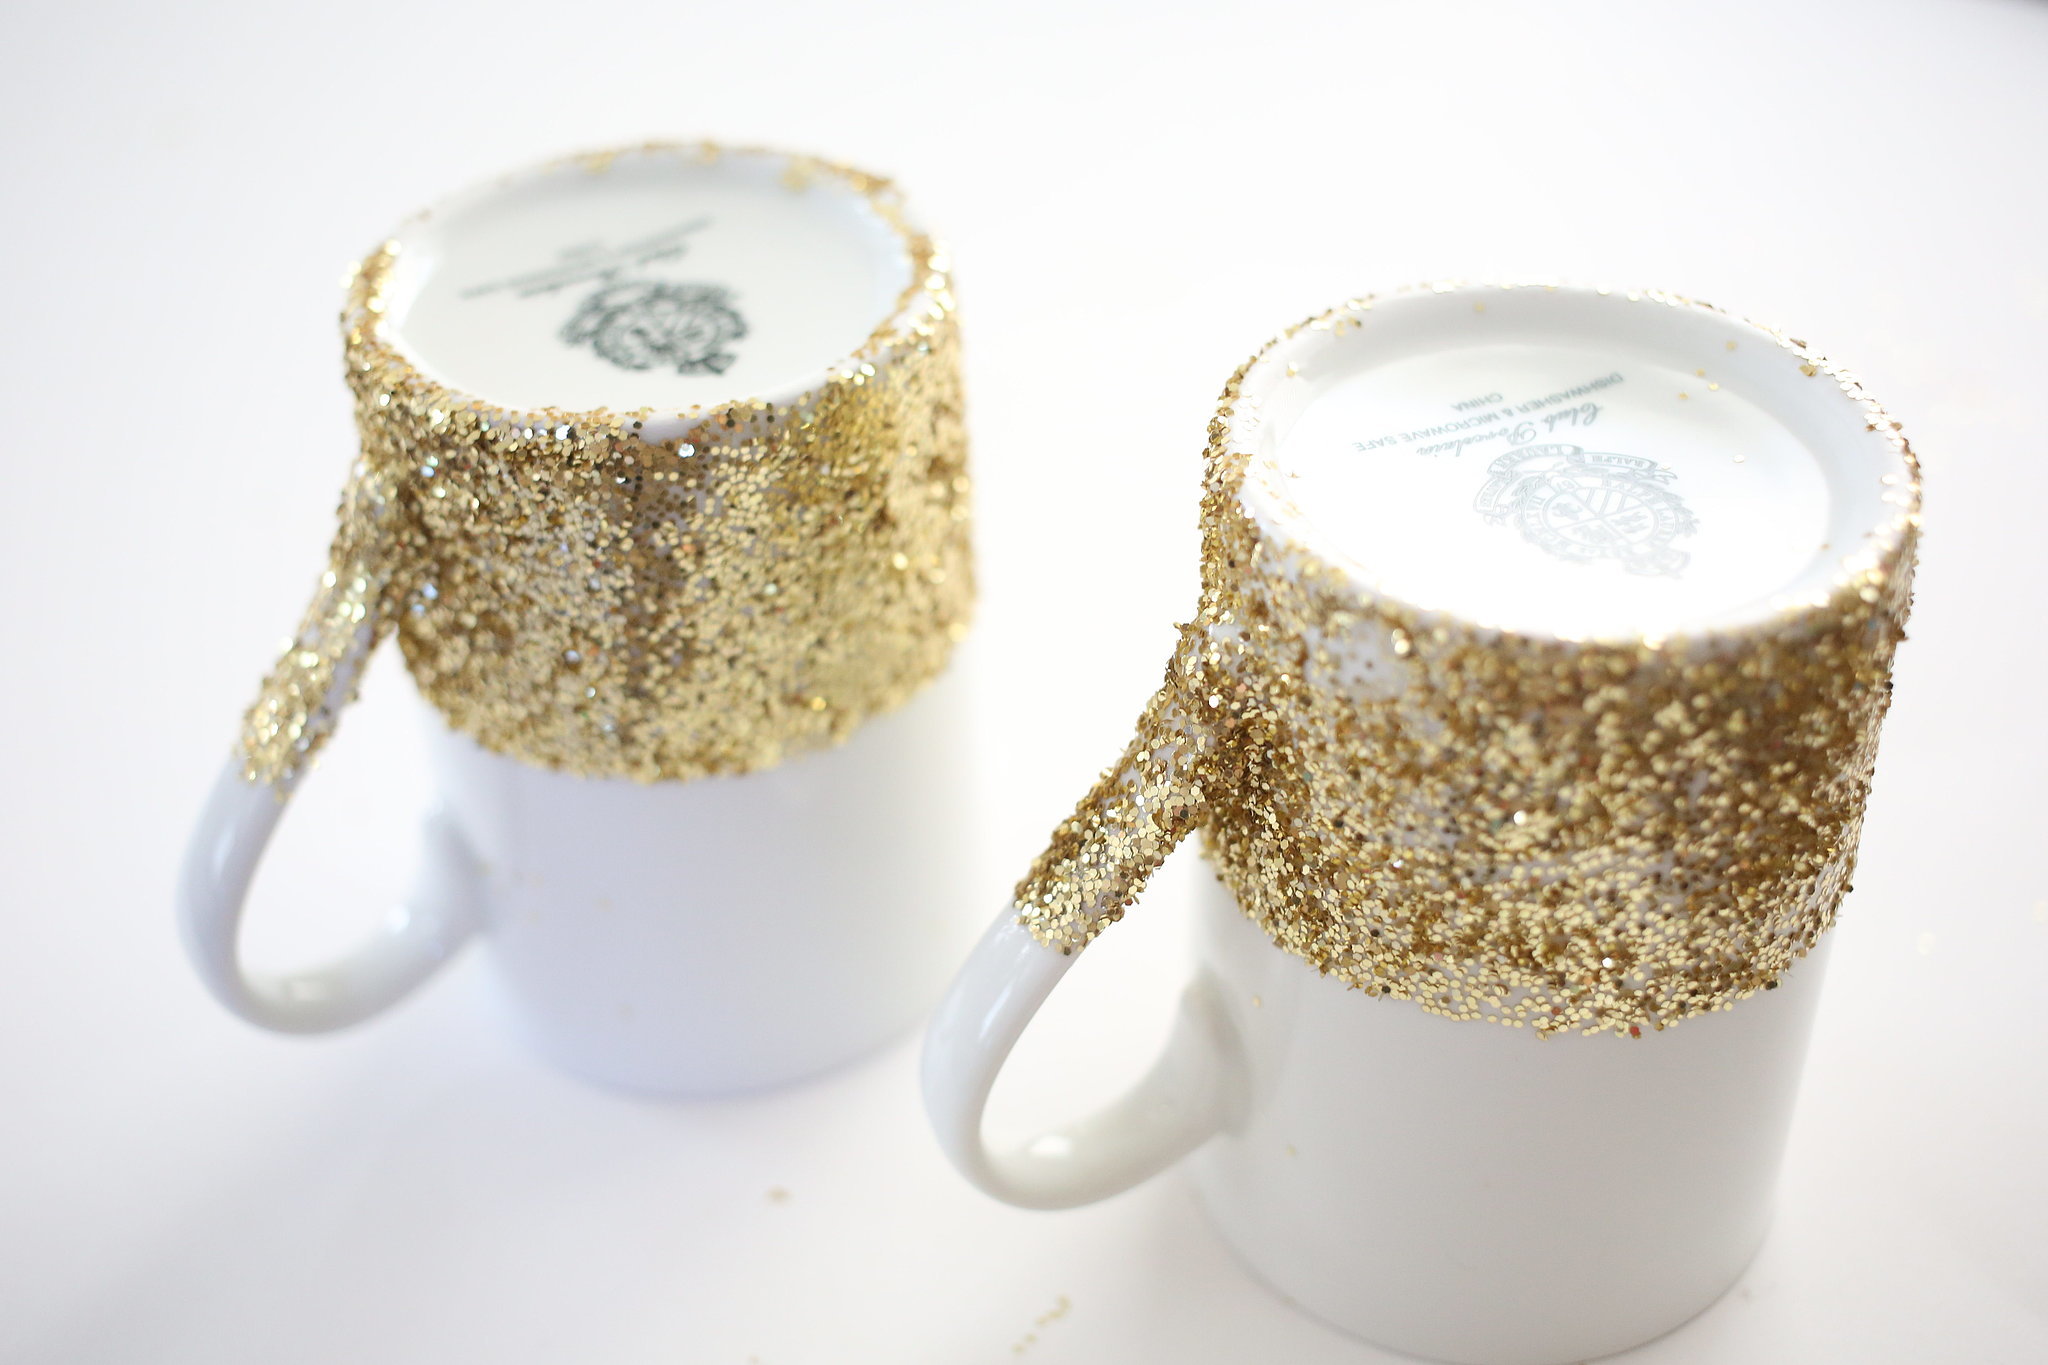 Diy Dishwasher Safe Glitter Dipped Mugs Popsugar Smart Living